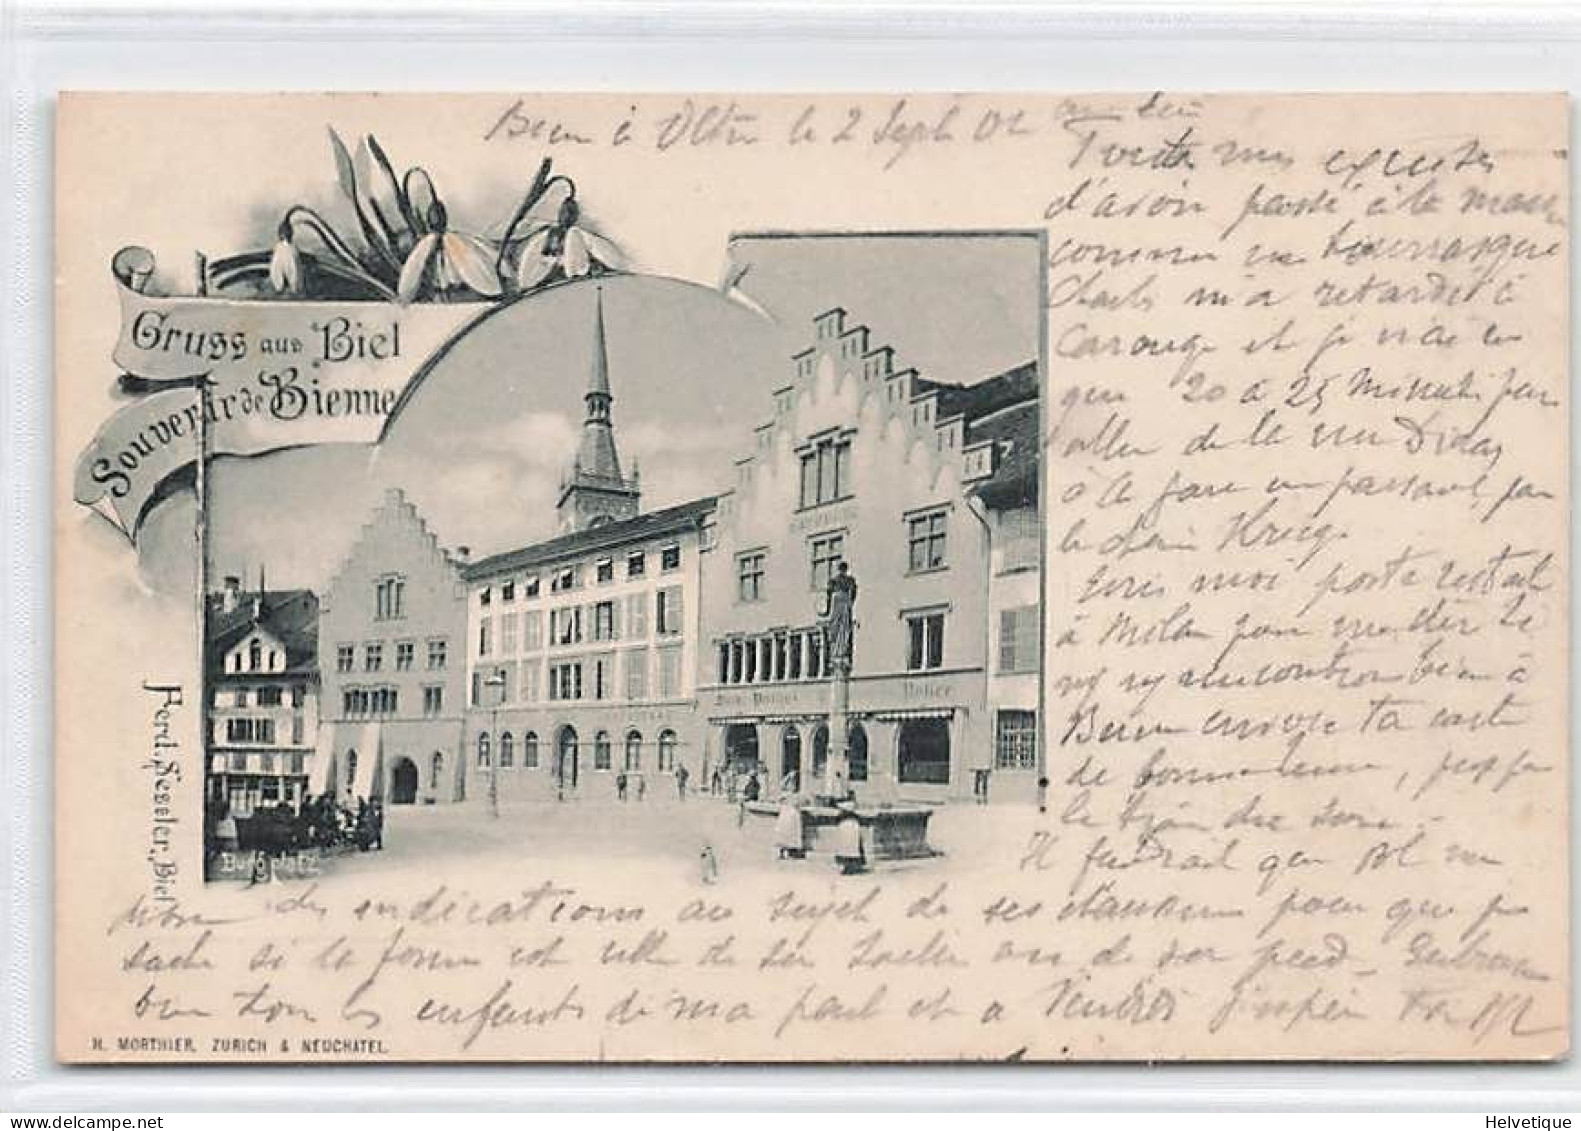 Gruss Aus Biel Souvenir De Bienne 1902 Assurance Au Dos - Bienne